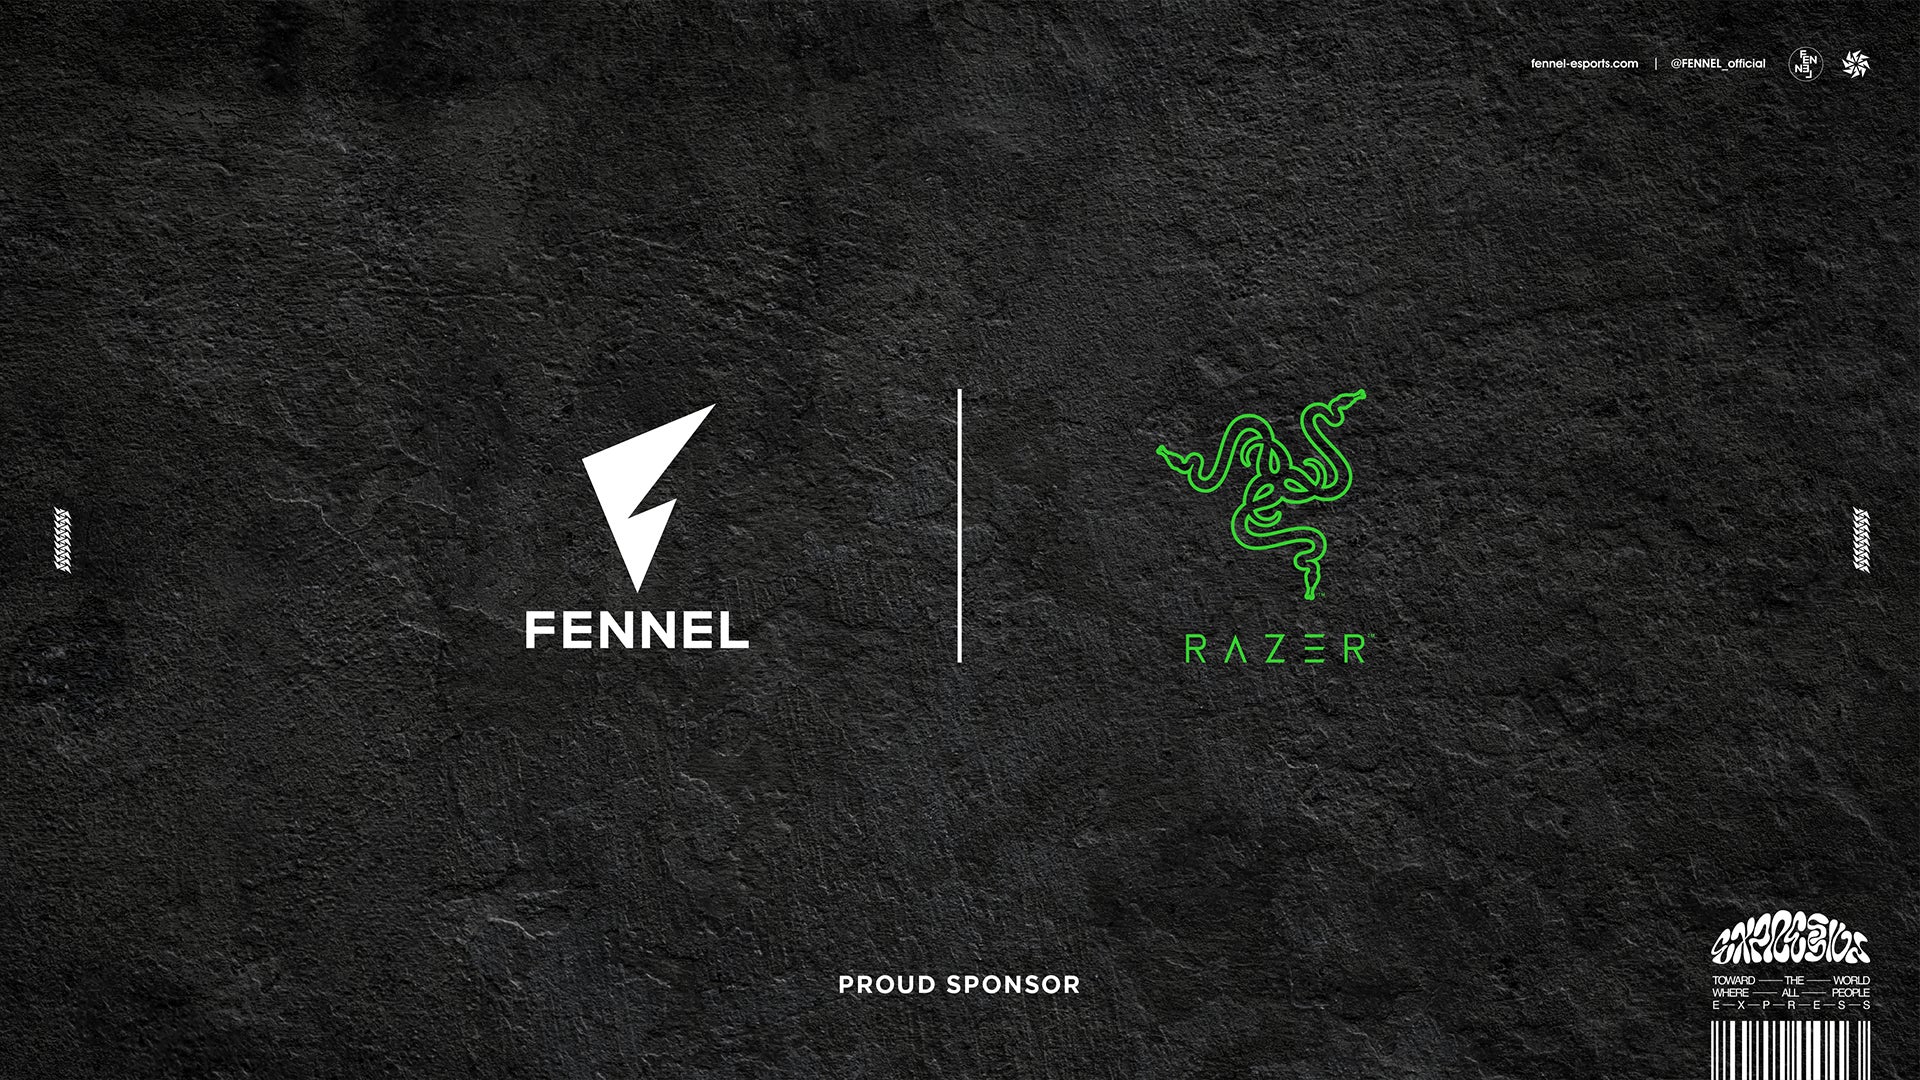 プロeスポーツチーム「FENNEL」、世界有数のゲーミングライフスタイルブランド「Razer」とスポンサー契約を締結